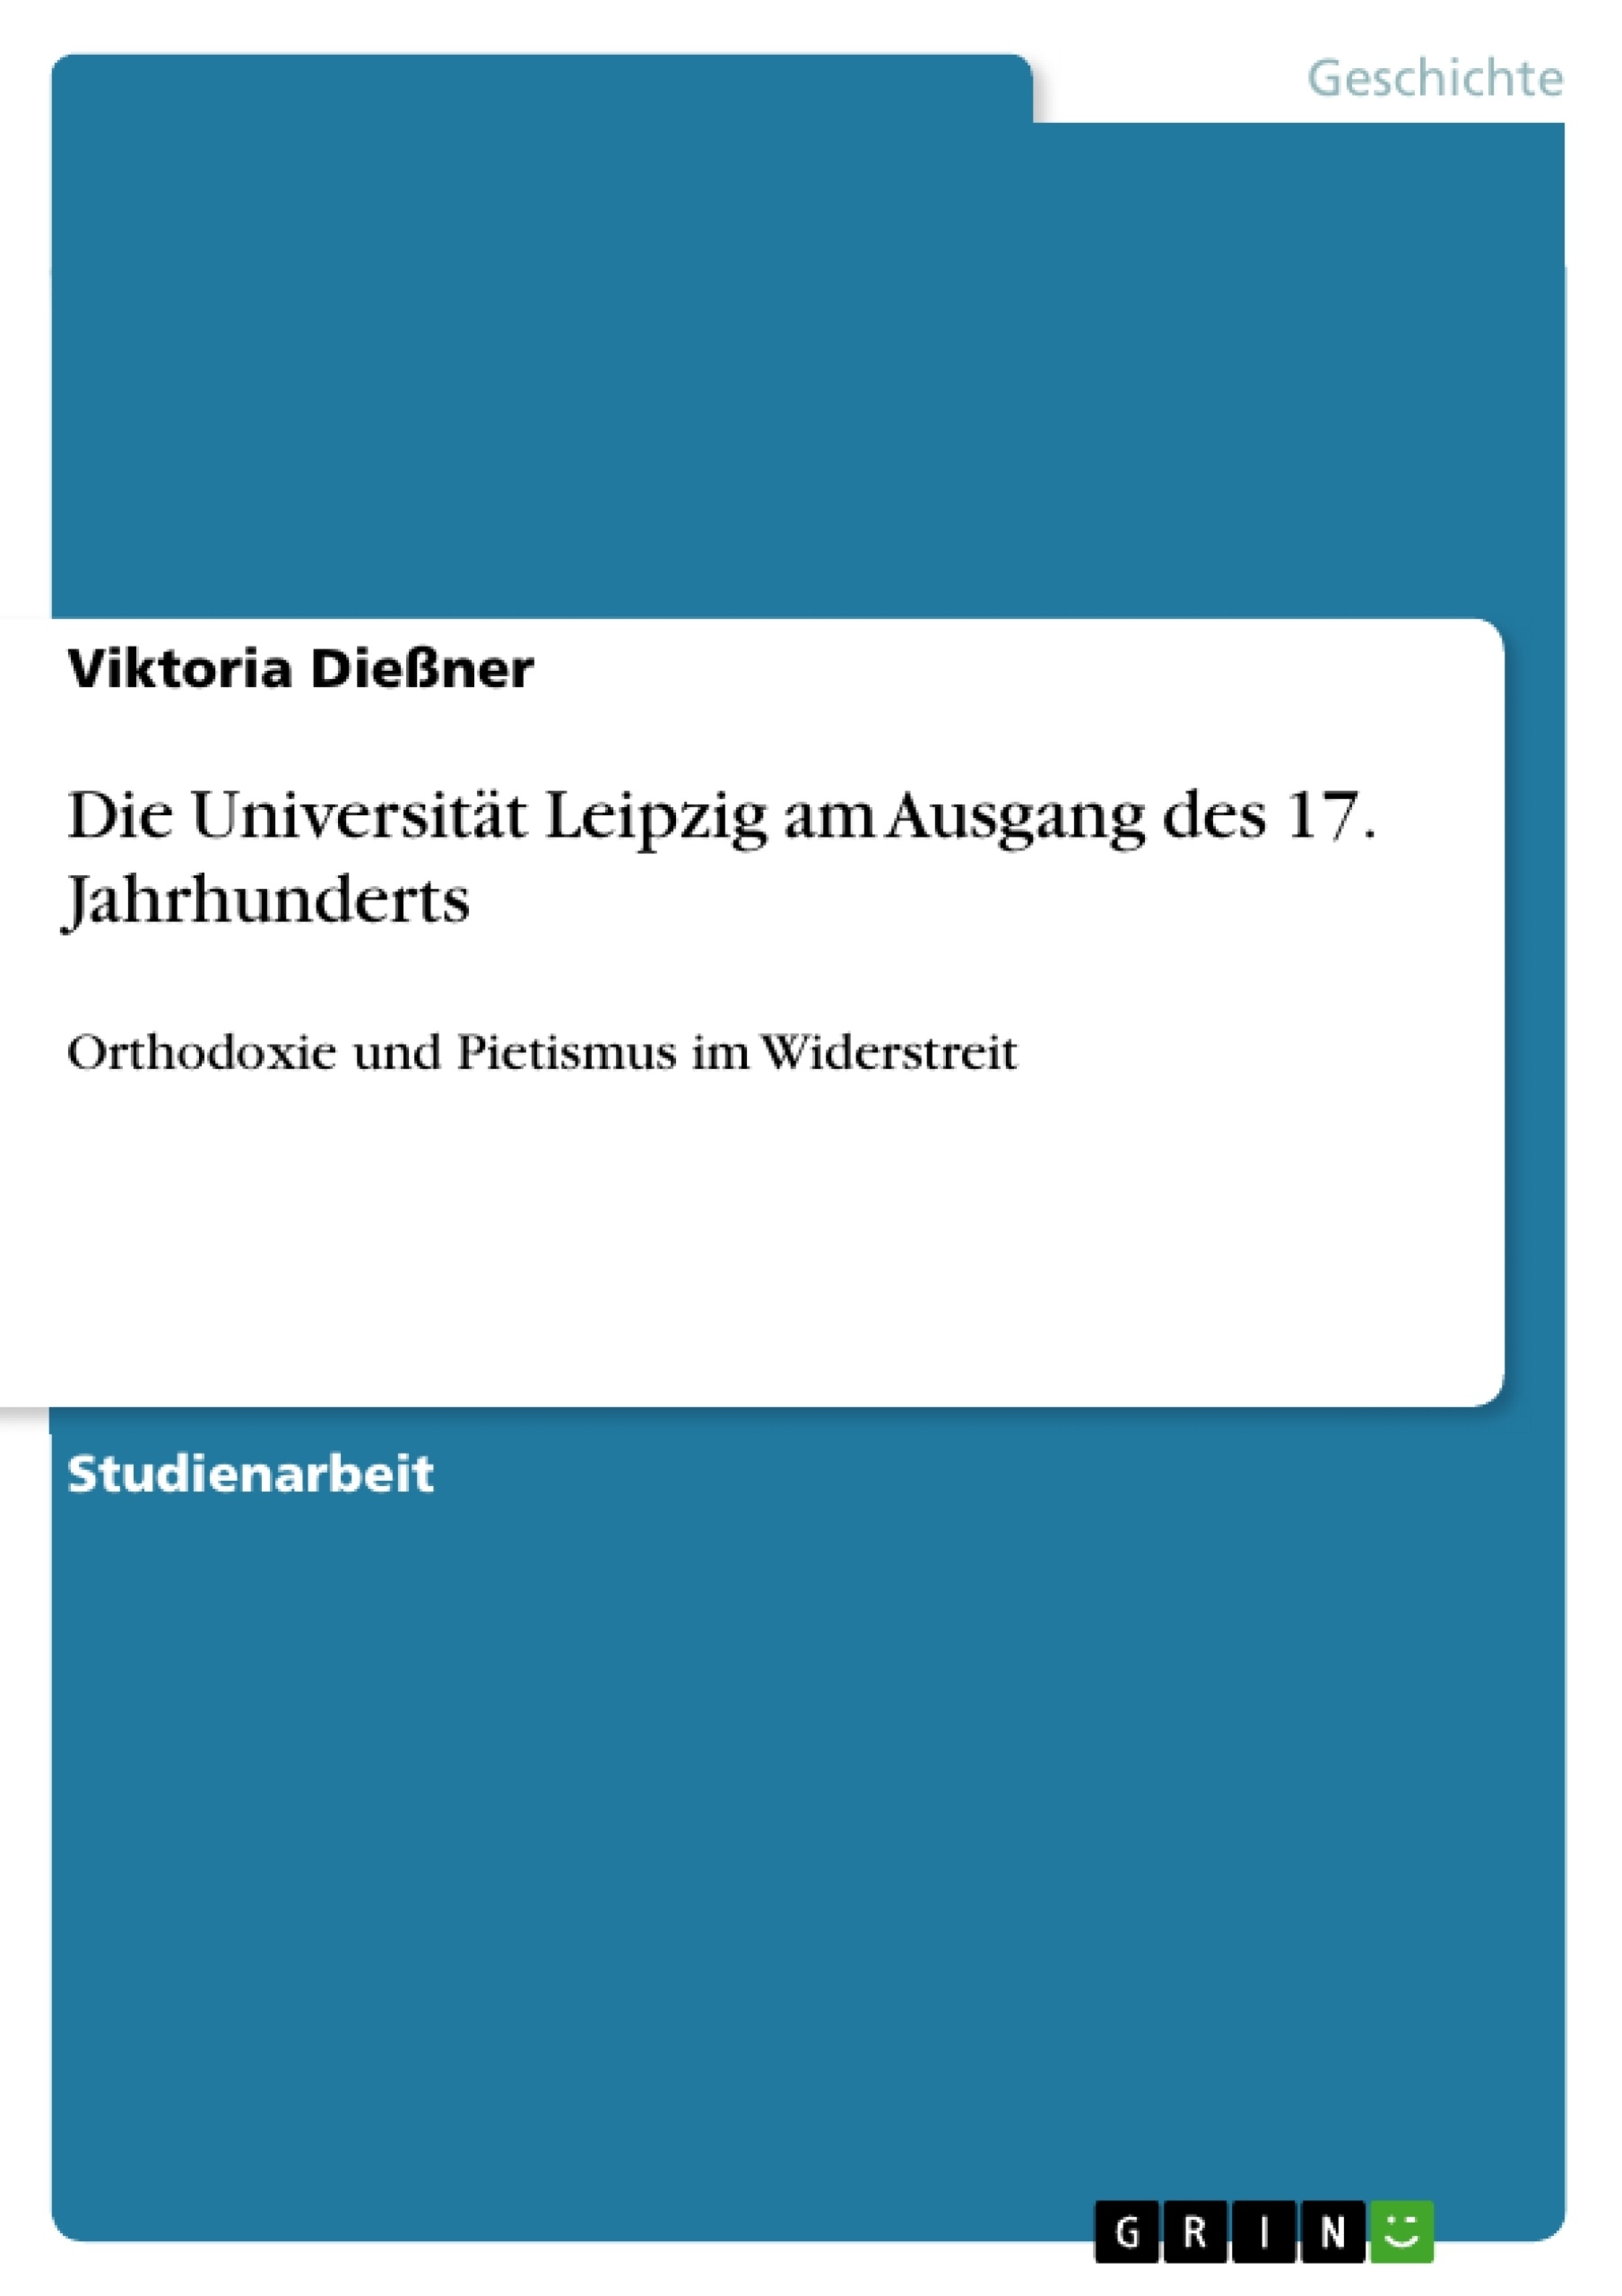 Título: Die Universität Leipzig am Ausgang des 17. Jahrhunderts 